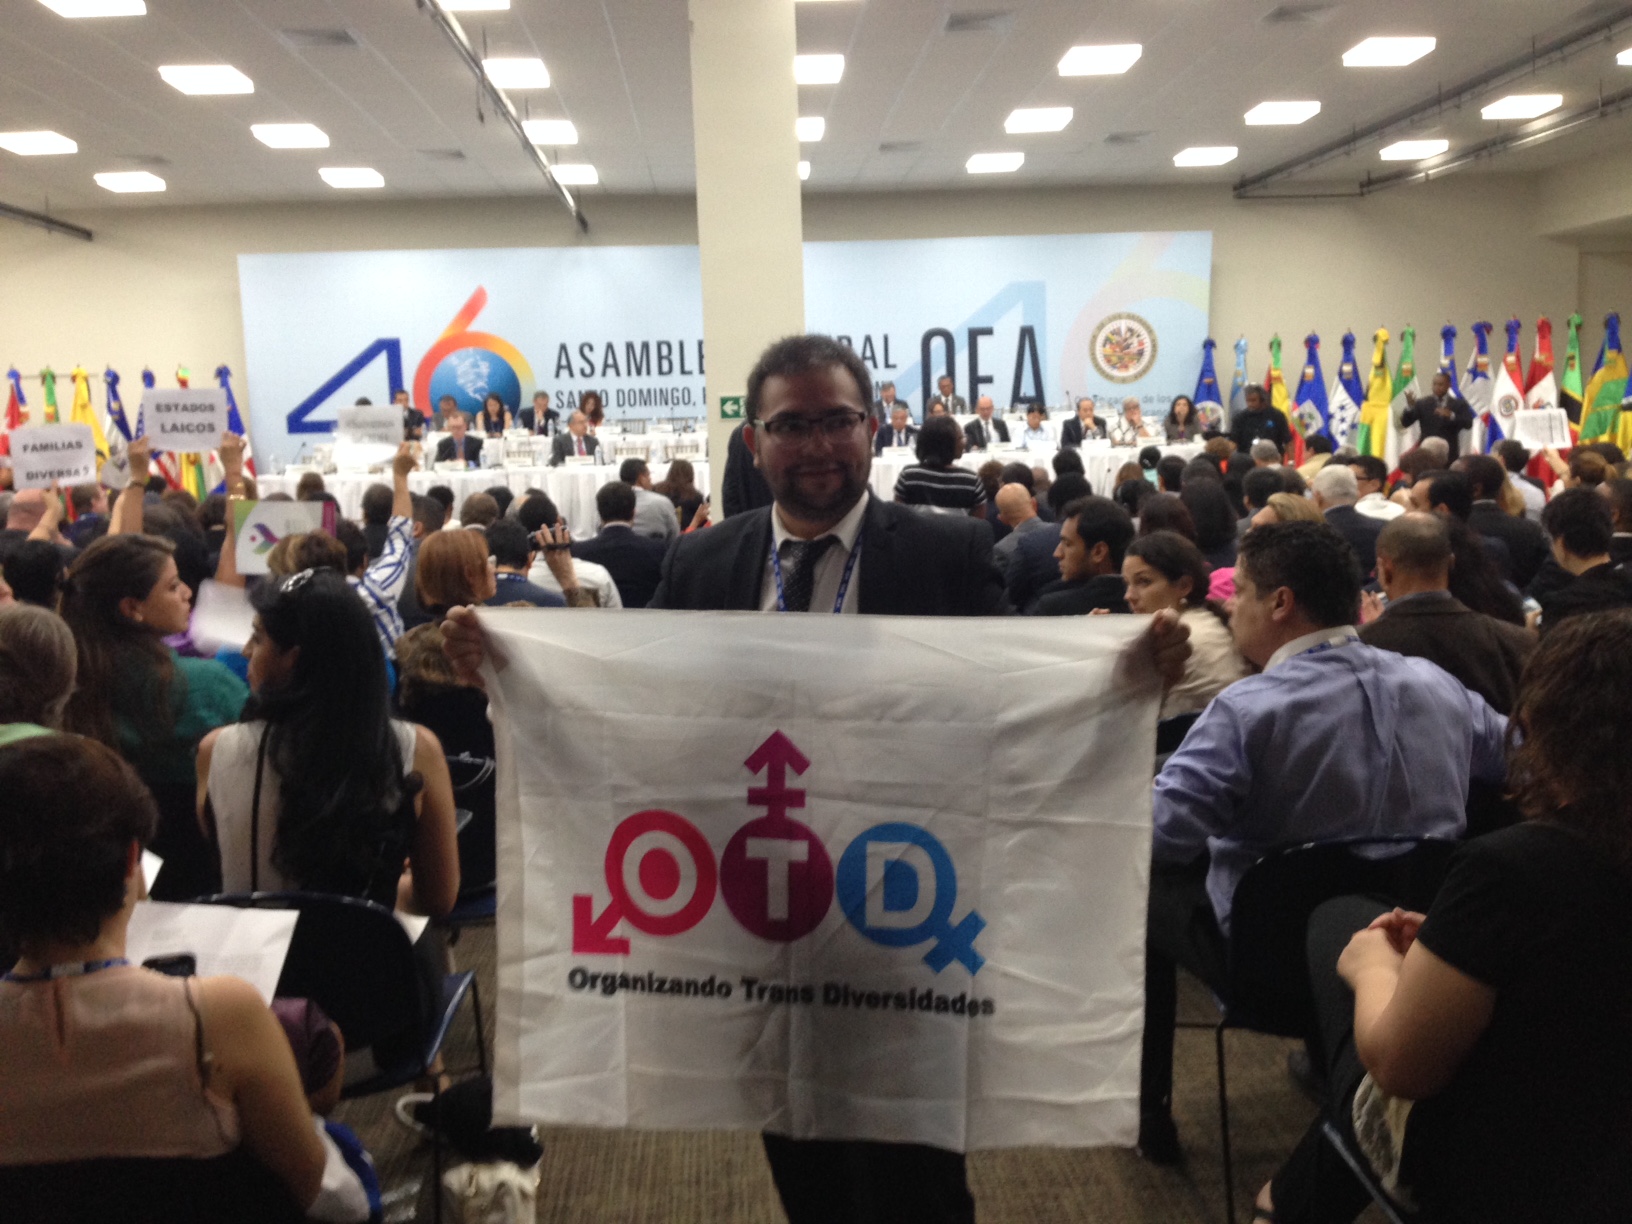 OTD Chile participa en la 46 Asamblea de la OEA